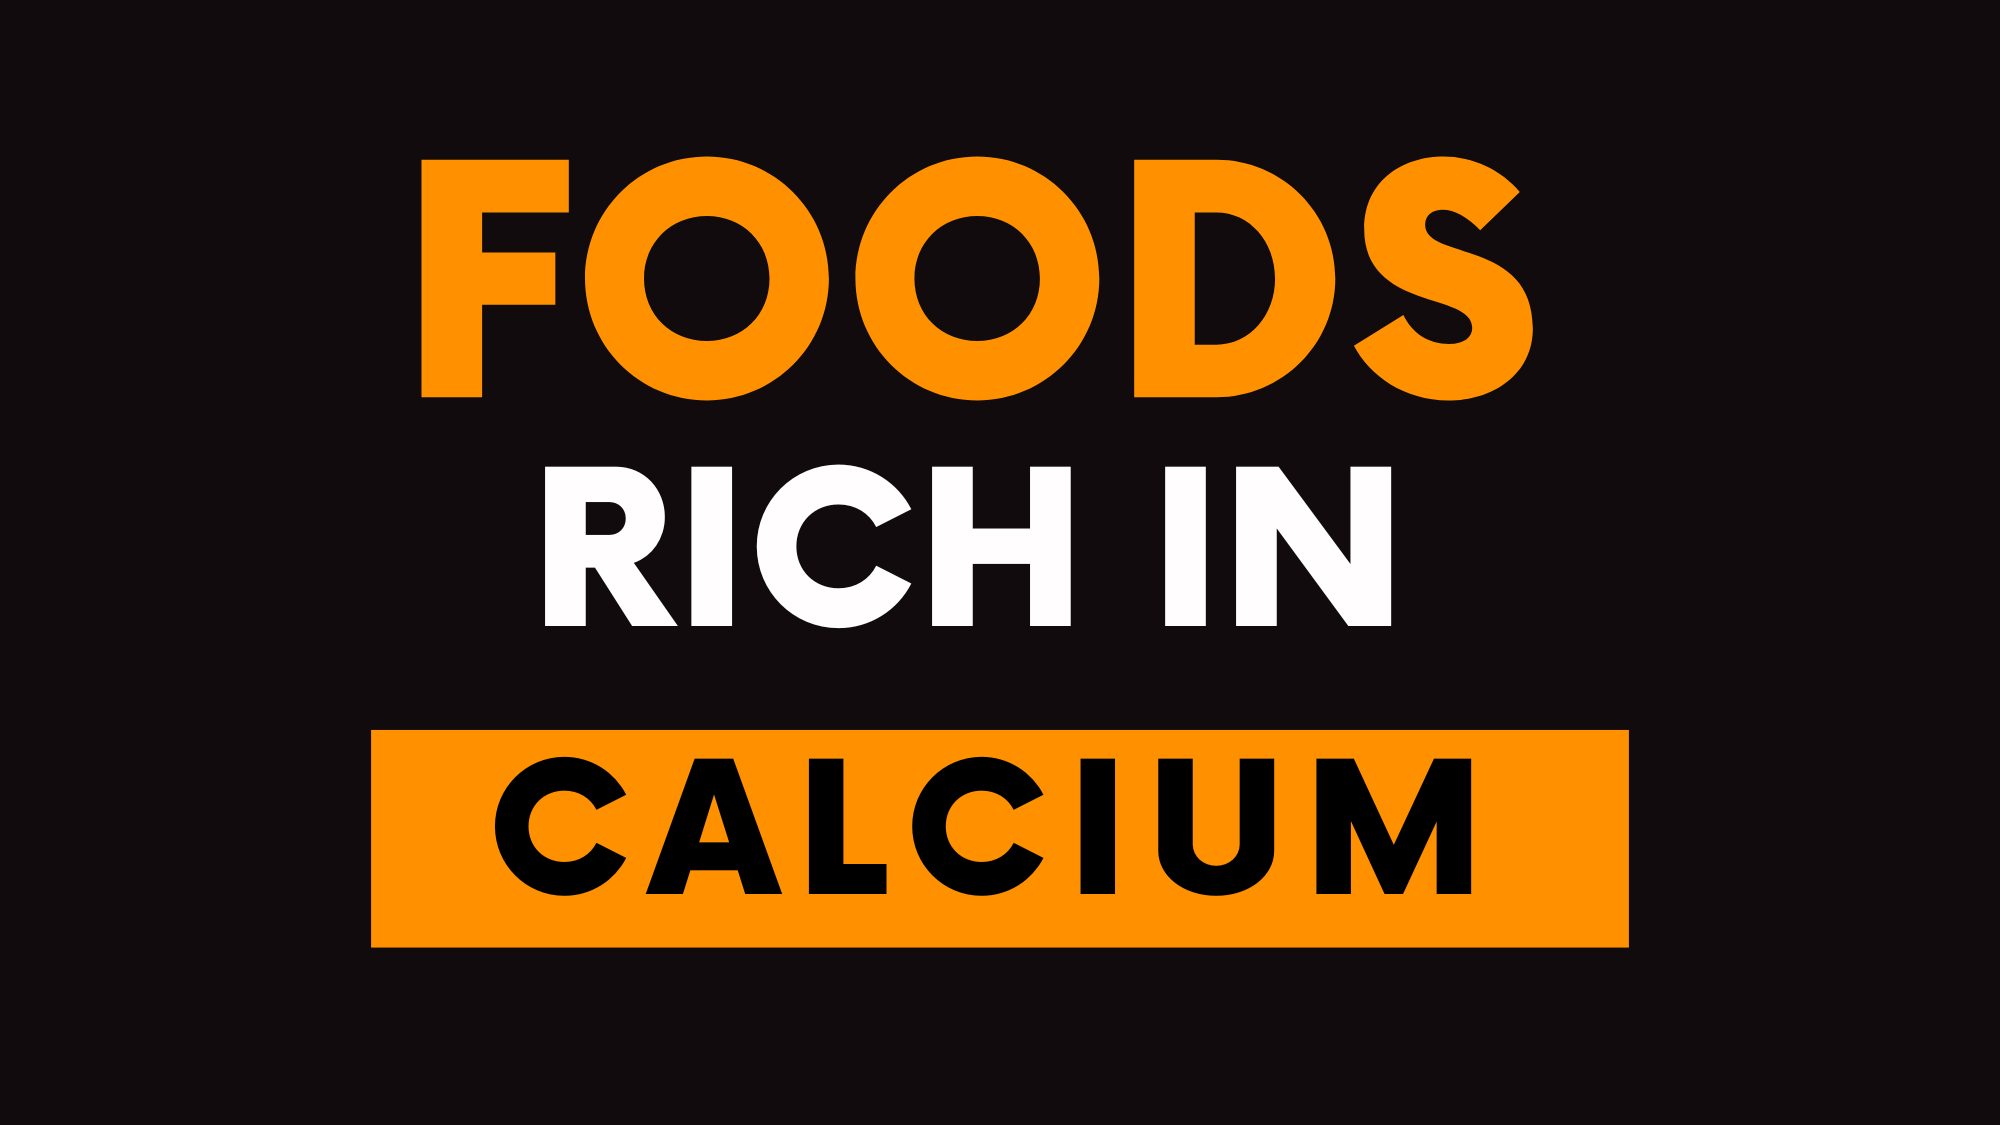 Foods Rich in Calcium